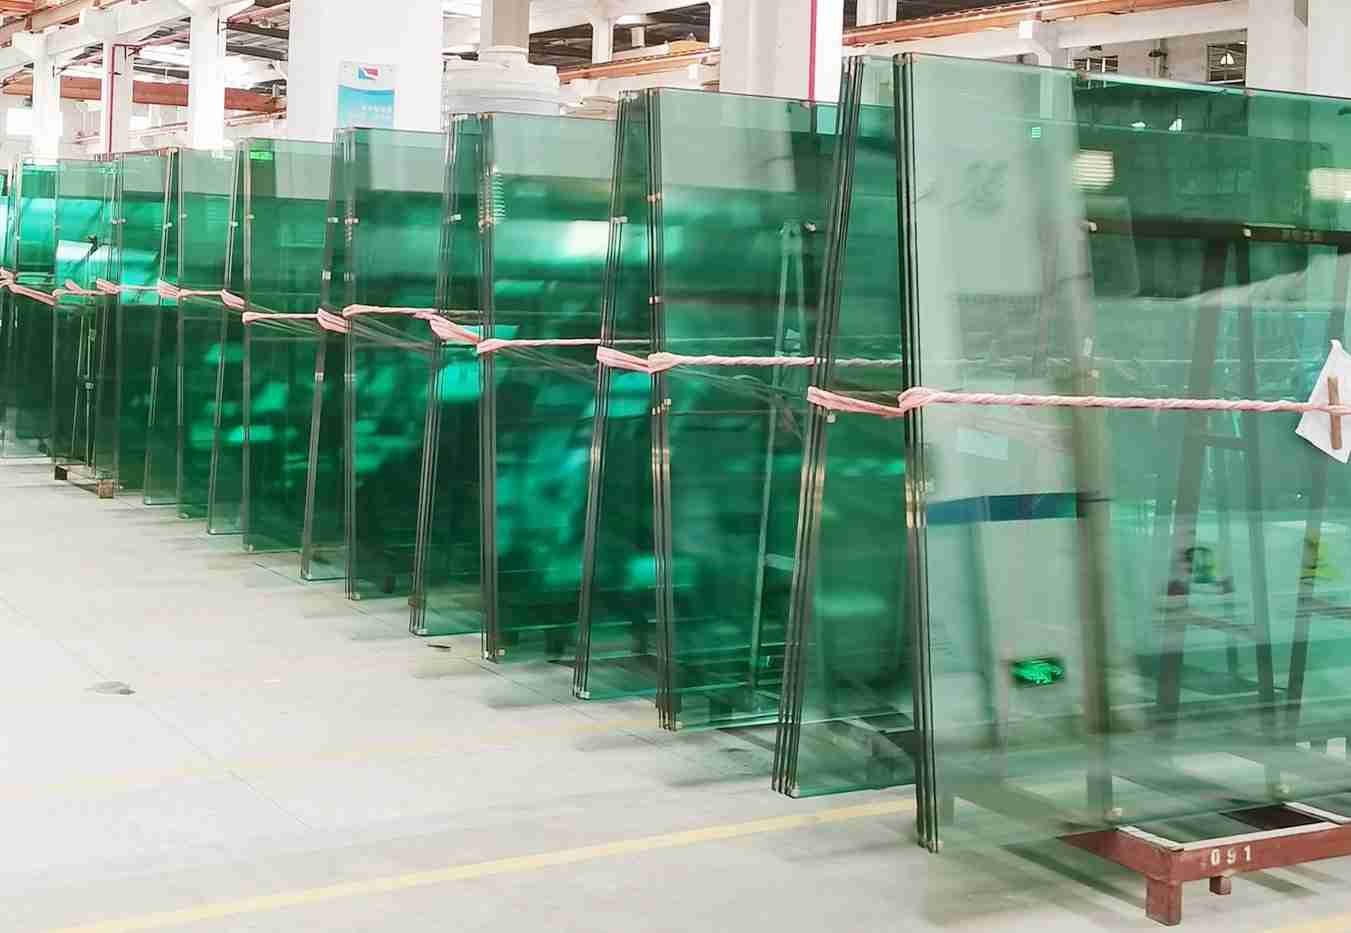 مسؤولة ممتازة الجودة padel المحكمة مصنع الزجاج في الصين. شنتشن التنين زجاج توفير عالية الجودة padel زجاج المحكمة . 10mm / 12mm الزجاج المقسى.